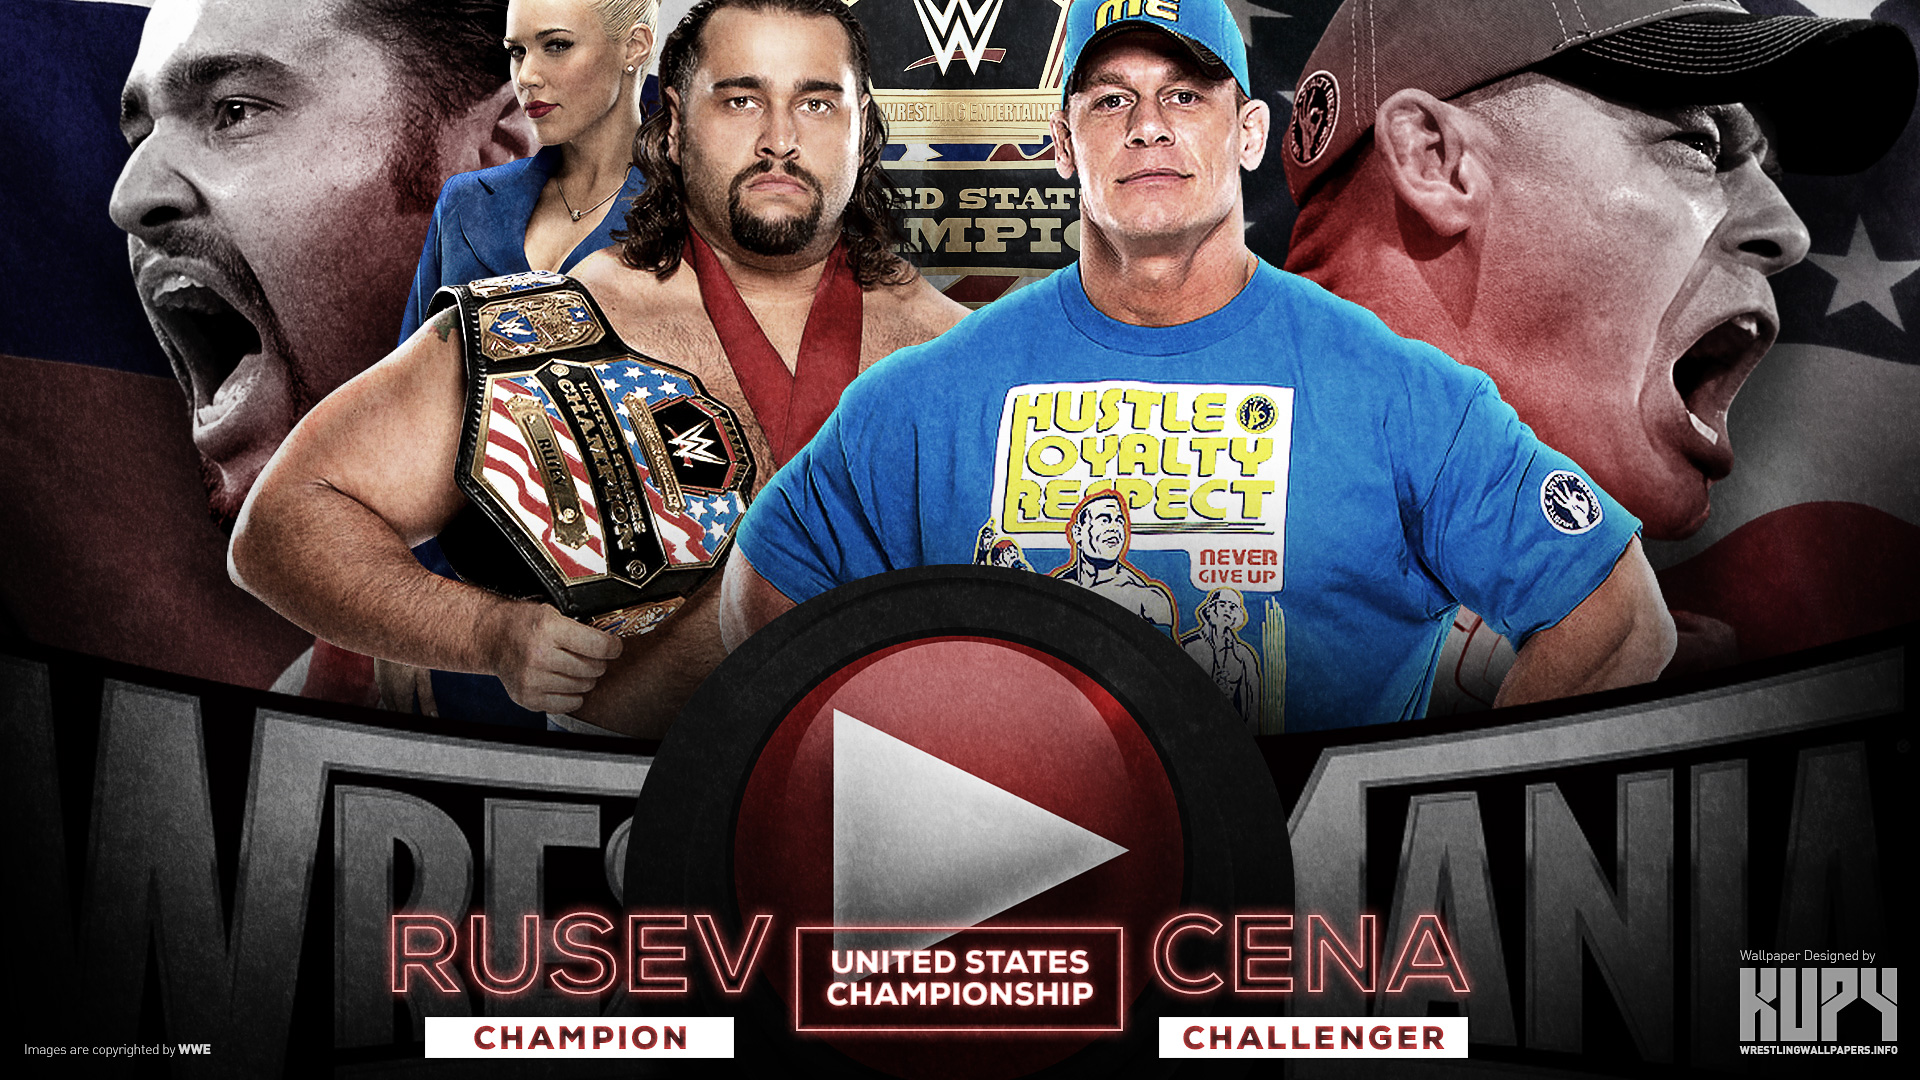 New John Cena Vs Rusev Road To Wrestlemania Wallpaper Kupy